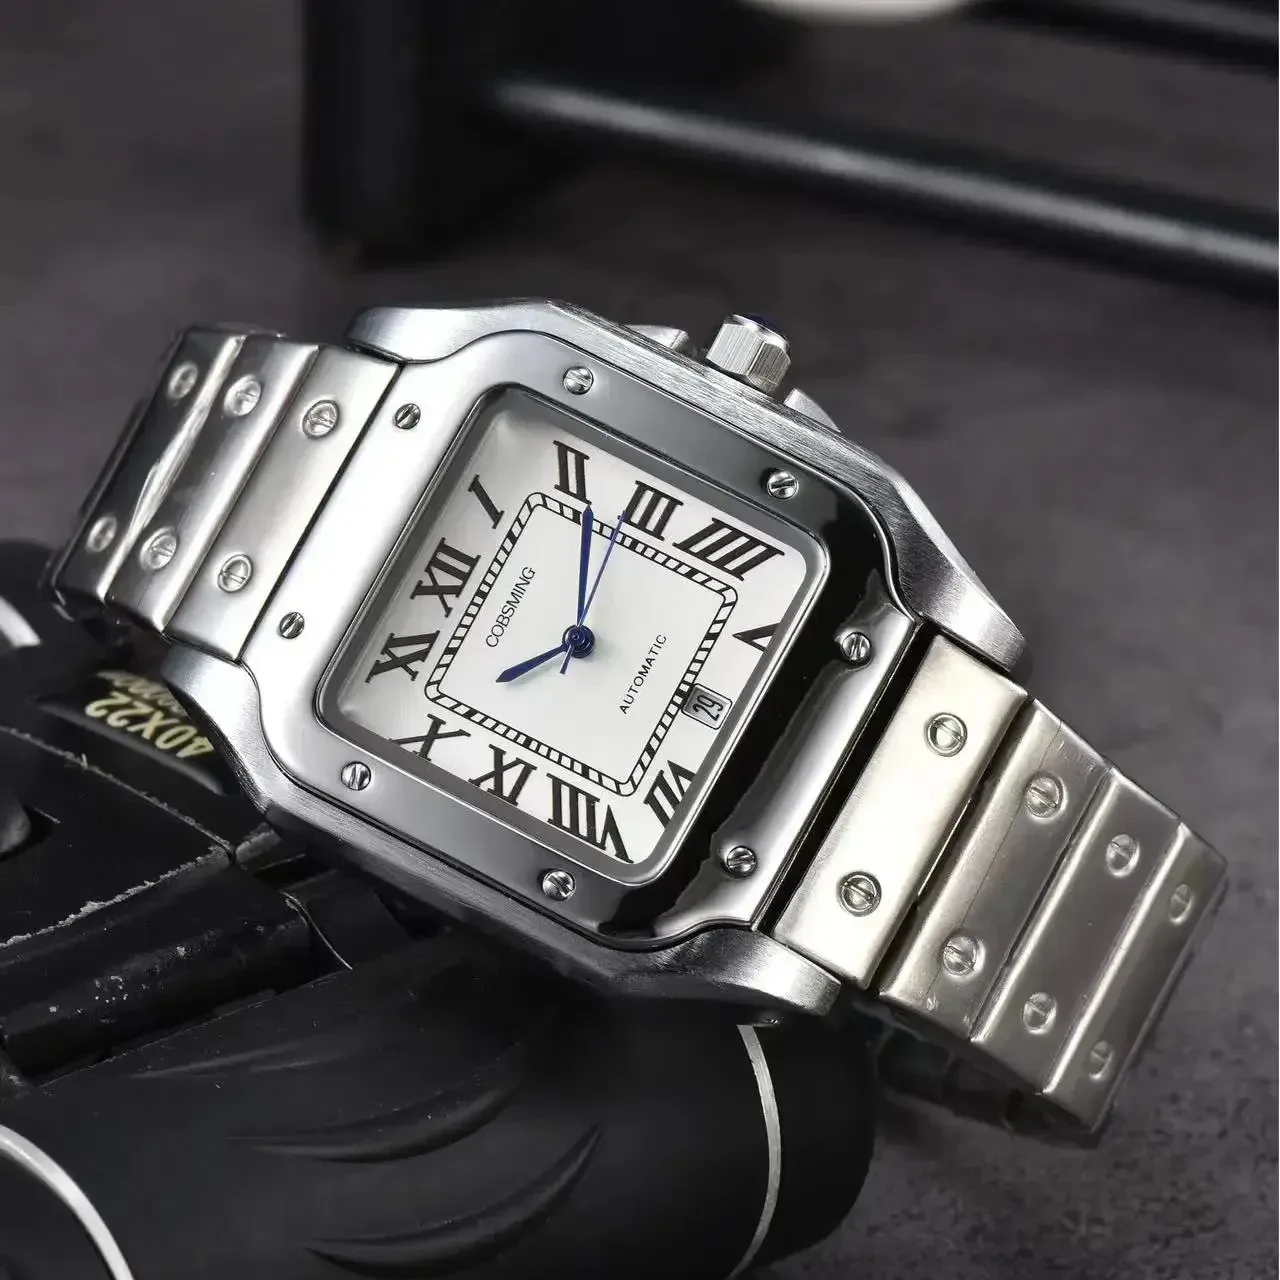 남성용 최고의 원본 브랜드 럭셔리 시계 39mm 스퀘어 다이얼 자동 날짜 자동 날짜 쿼츠 스틸 스트랩 테스트 판매 남성 시계 240510